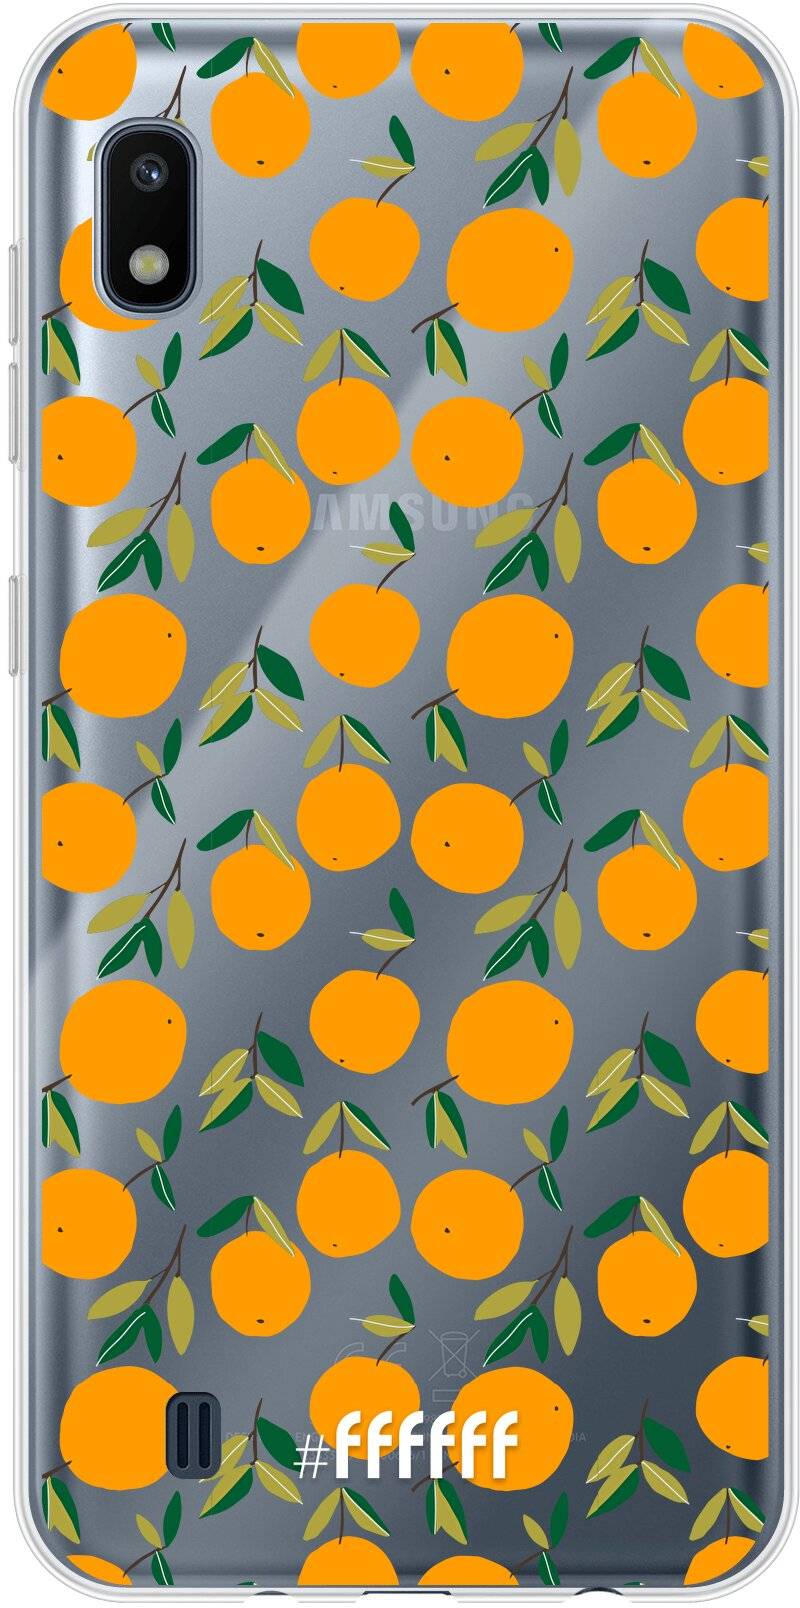 Oranges Galaxy A10